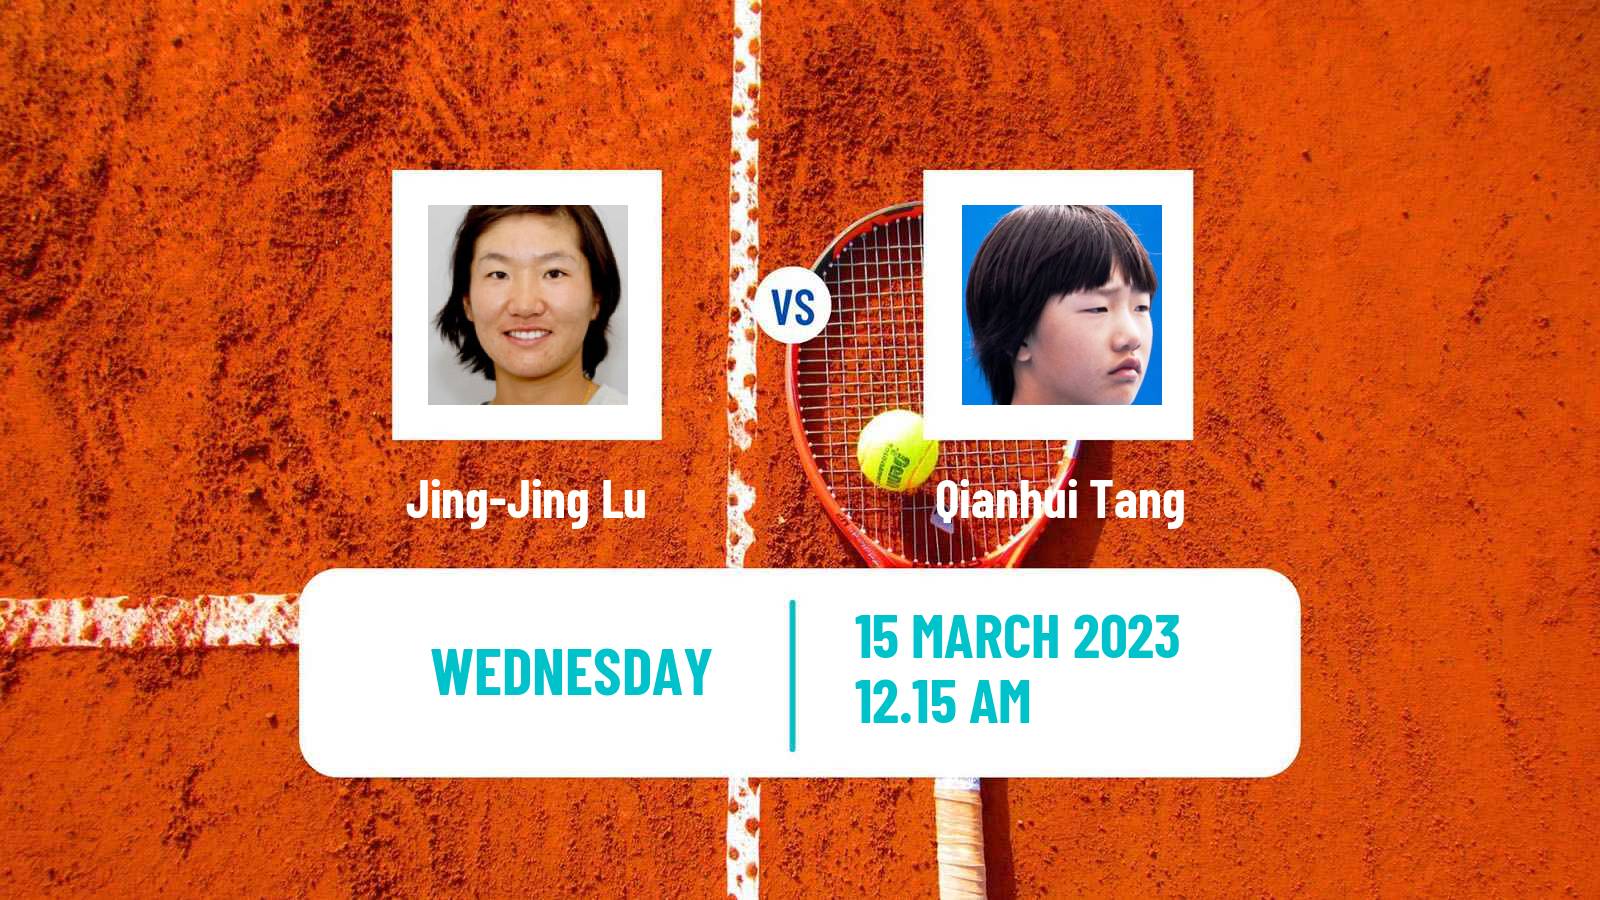 Tennis ITF Tournaments Jing-Jing Lu - Qianhui Tang